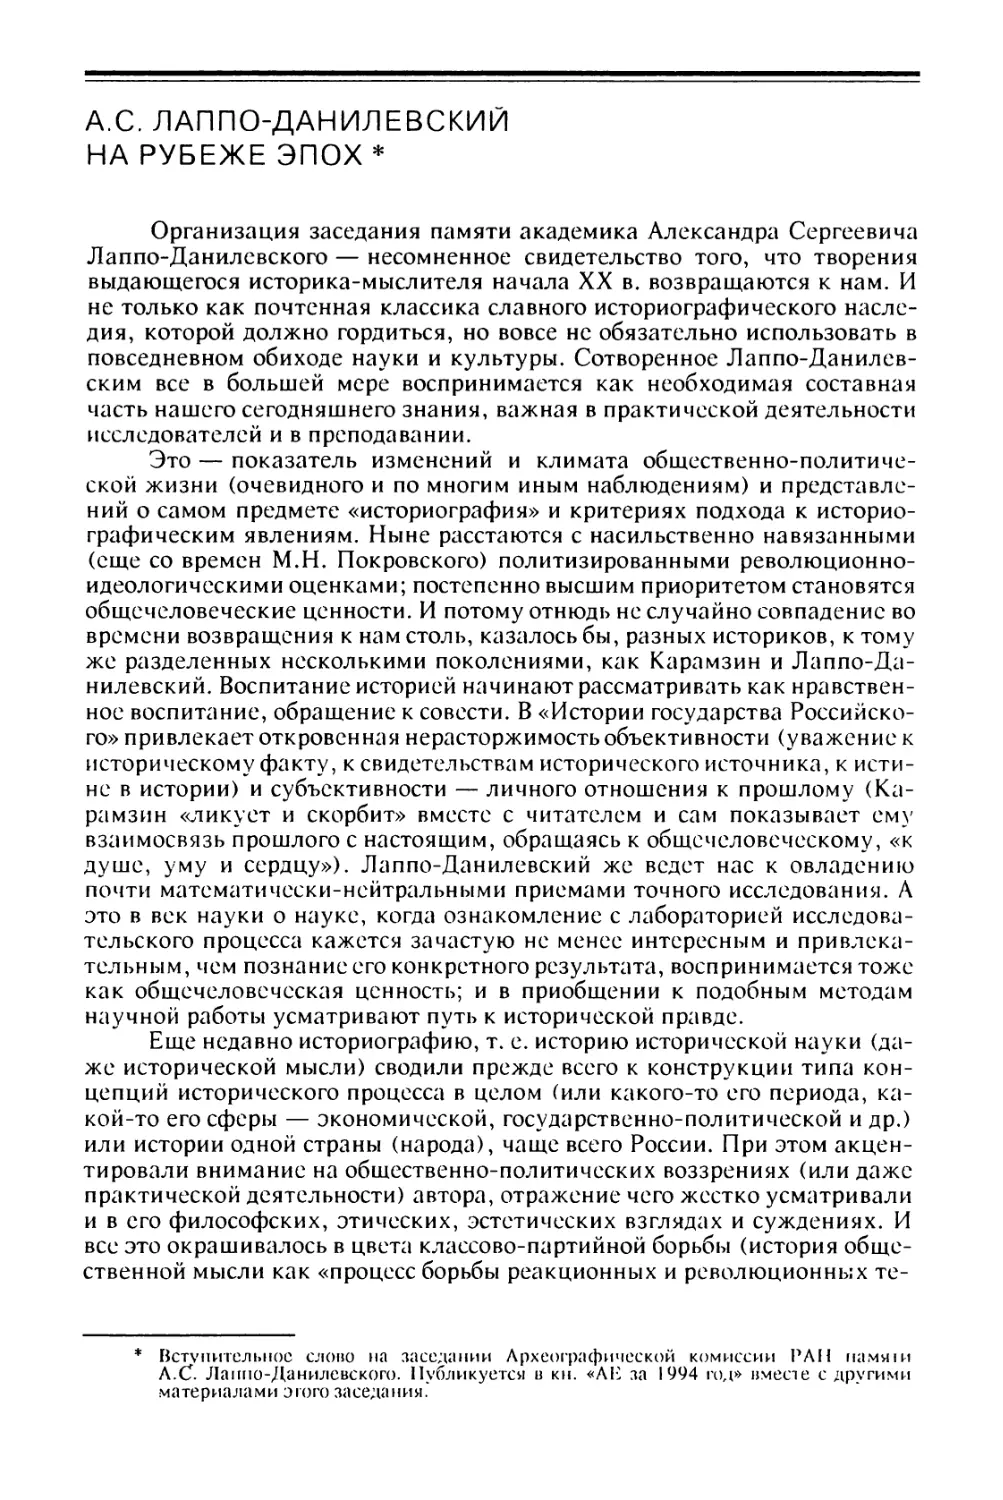 А.С. Лаппо-Данилевский на рубеже эпох